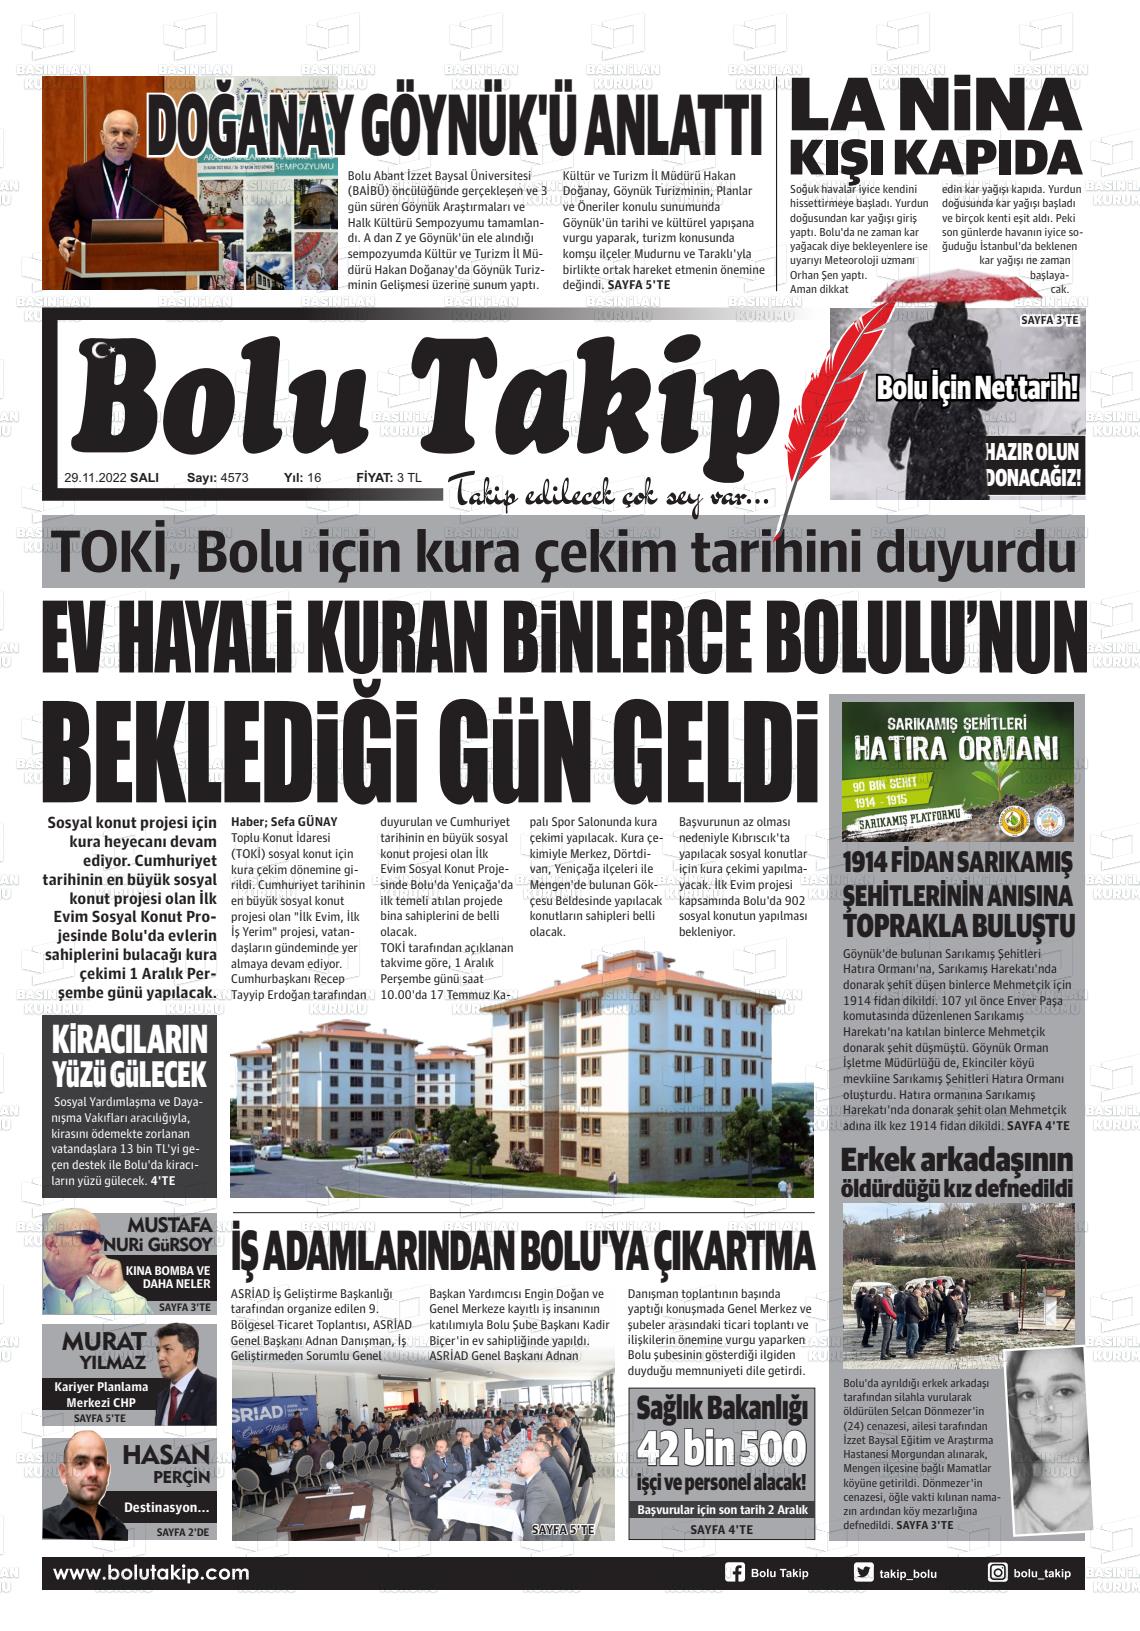 29 Kasım 2022 Bolu Takip Gazete Manşeti